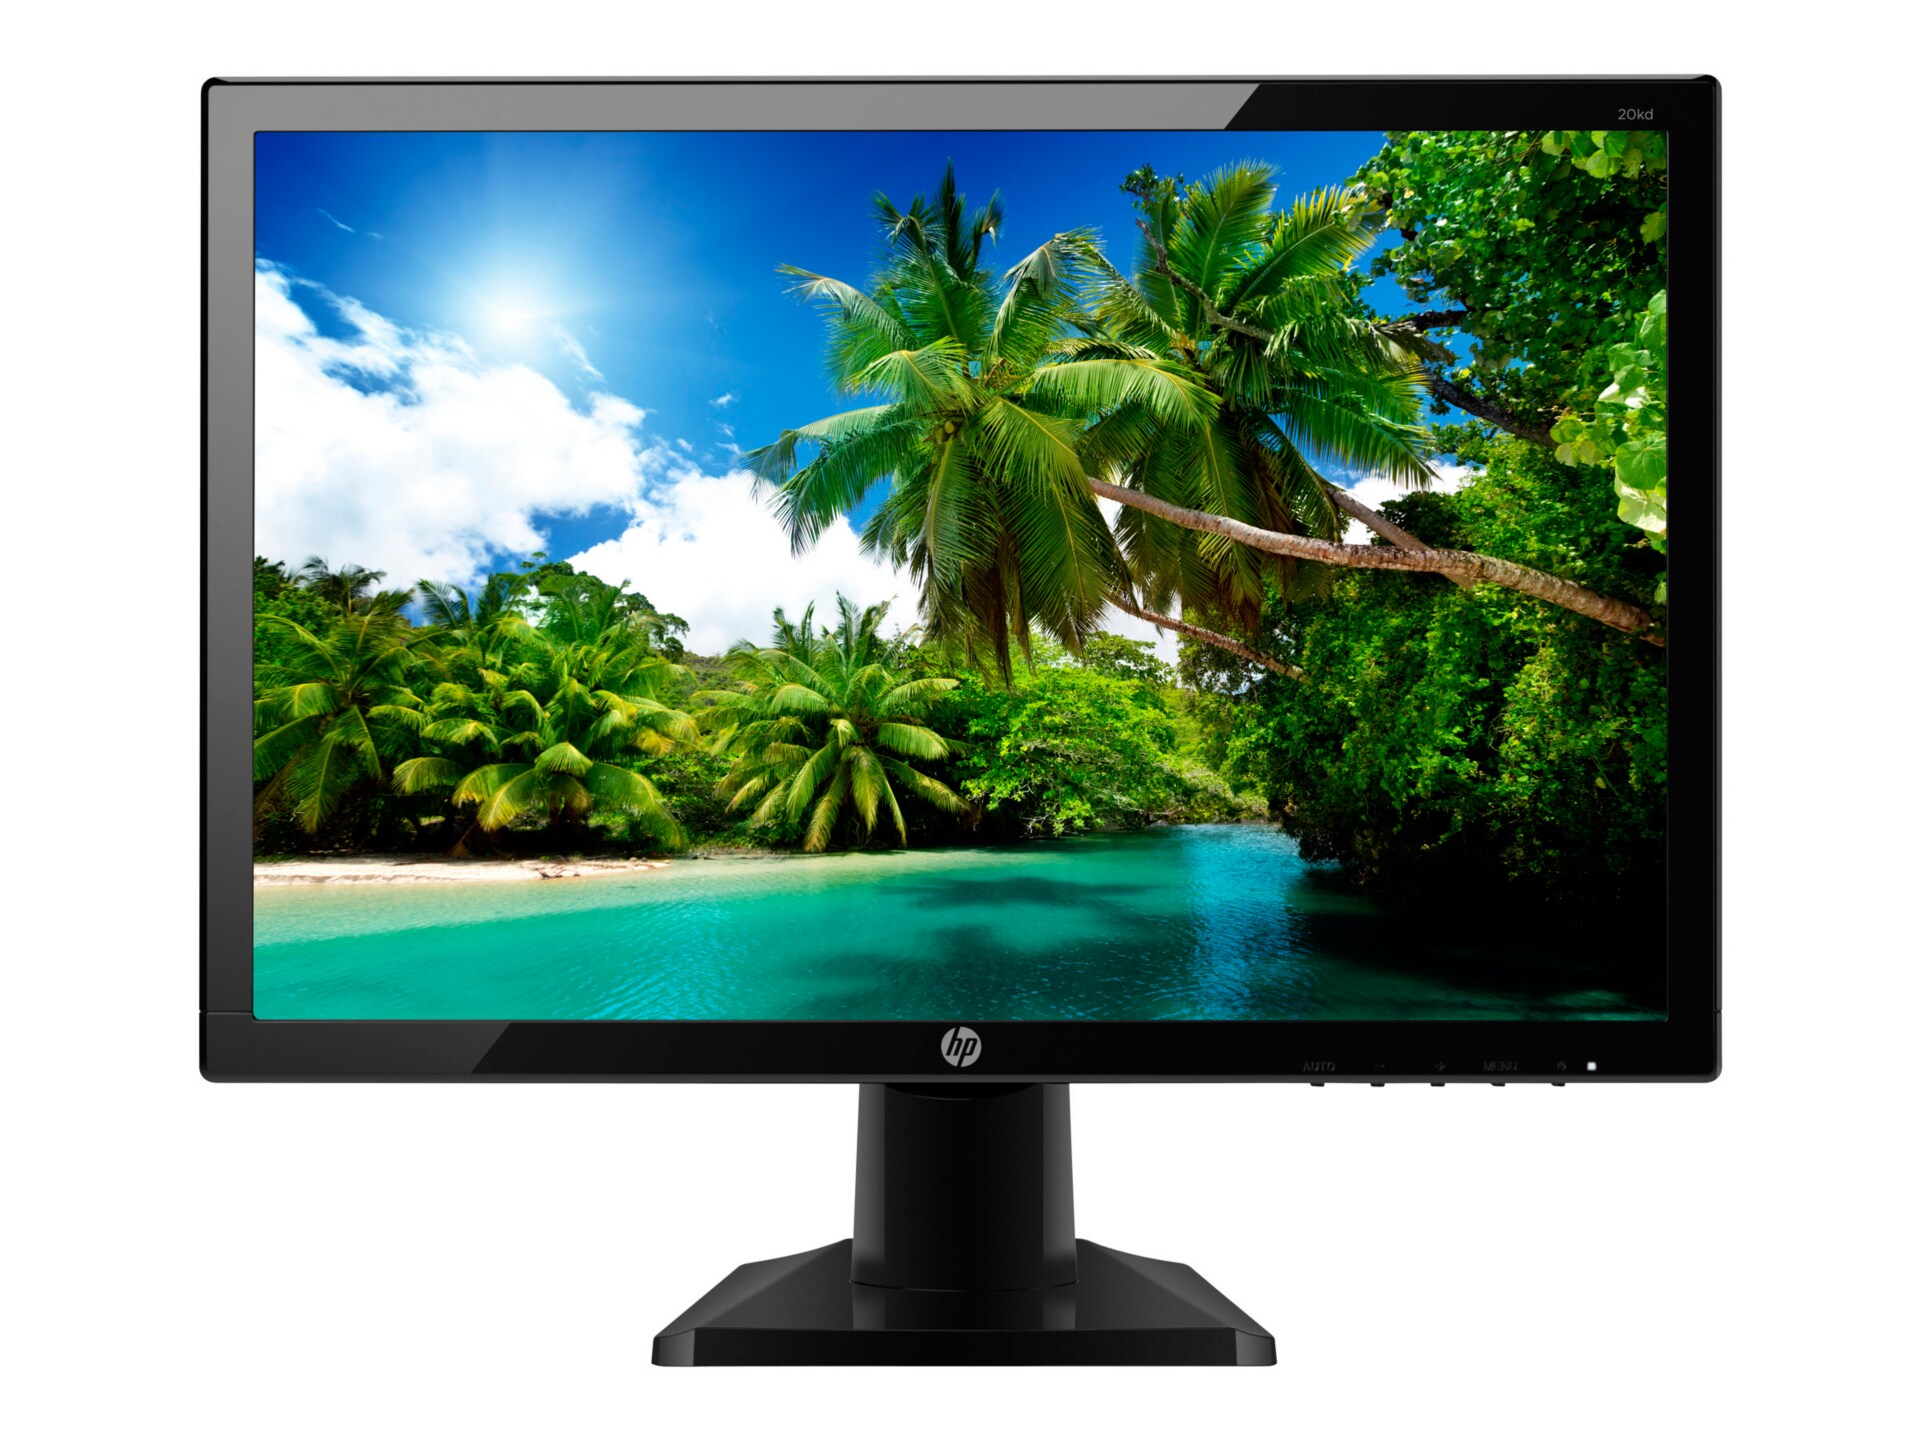 HP 20kd - LED monitor - 19.5"